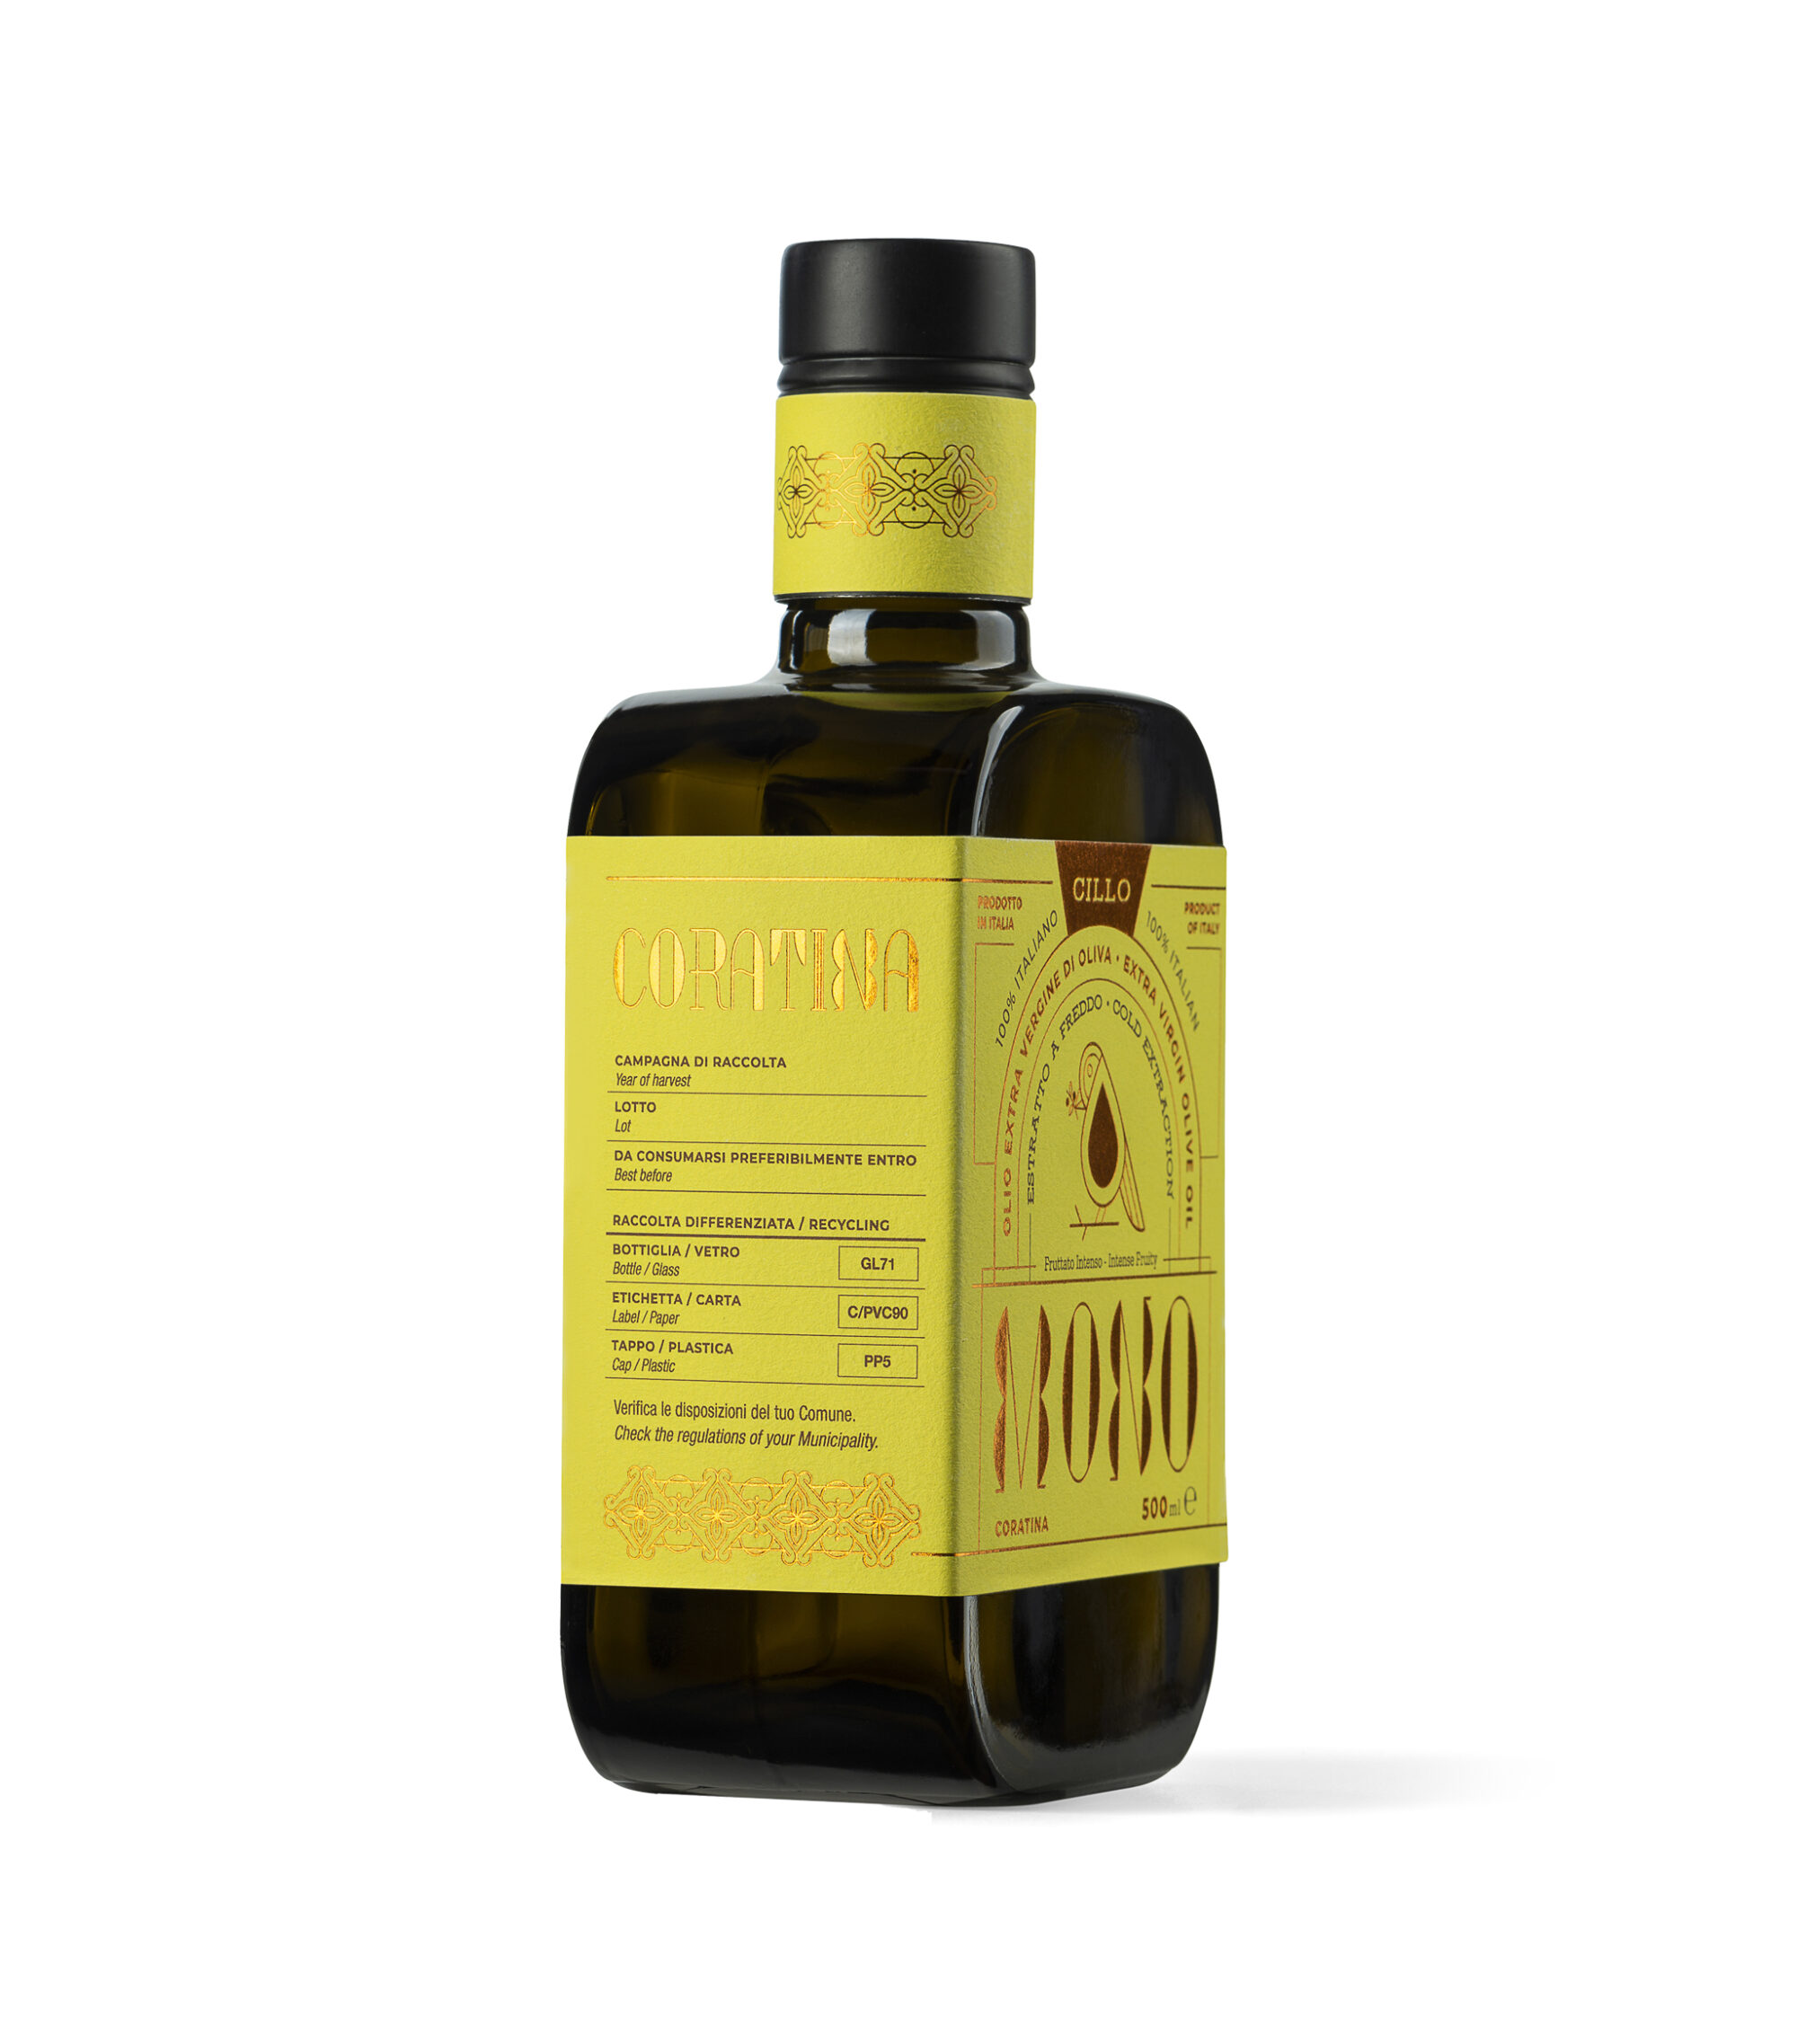 Olio extravergine di oliva Monocultivar Coratina, Lato1, 500ml, Francesco Cillo EVO Oils.